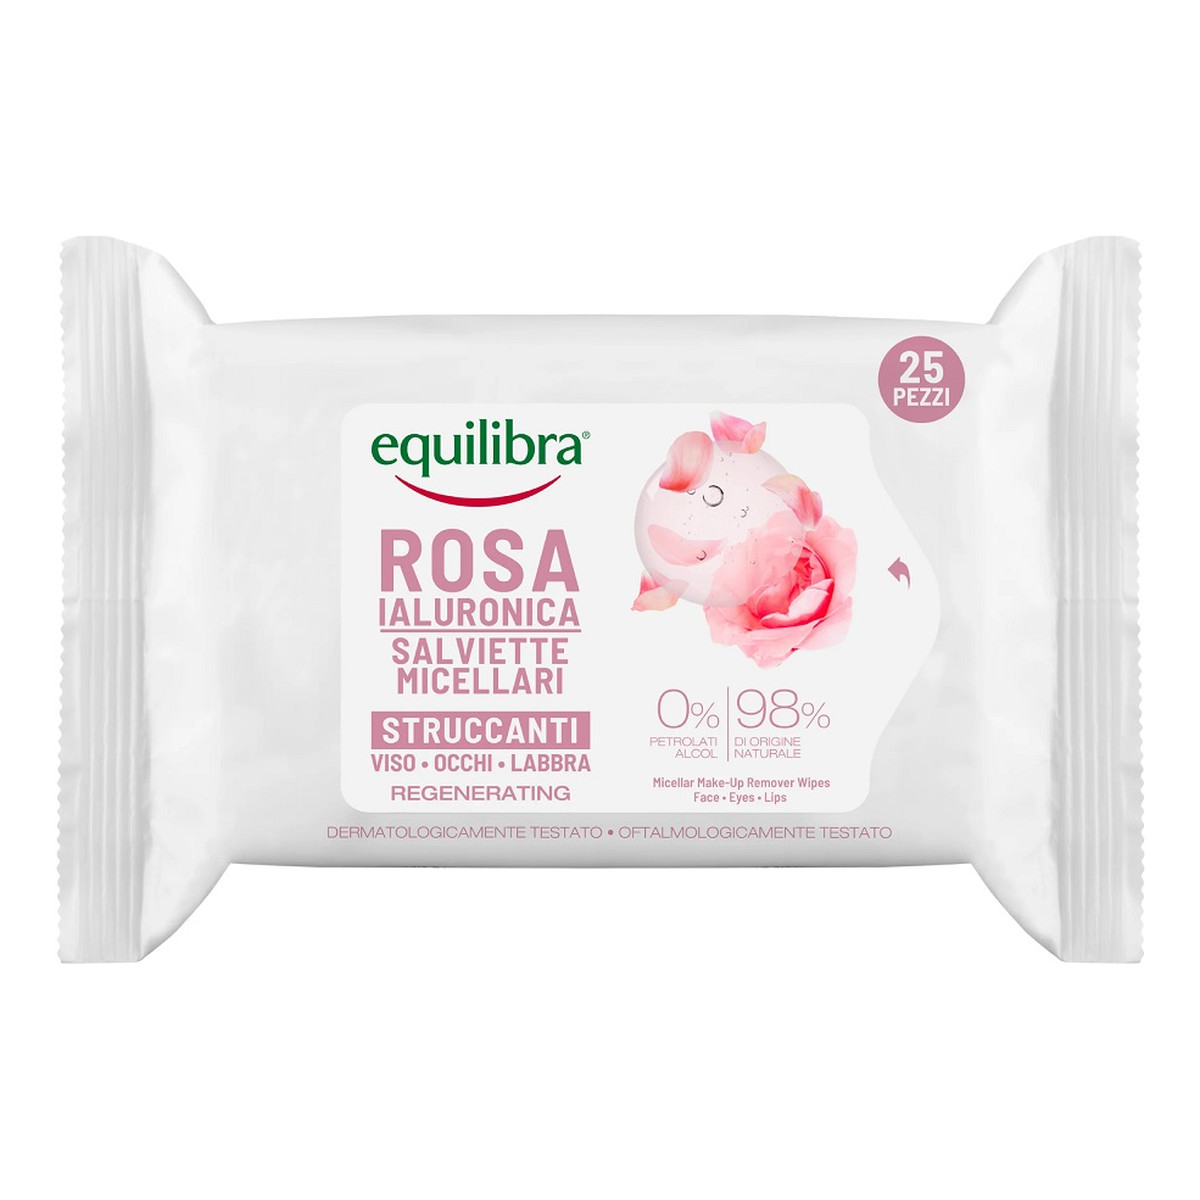 Equilibra Rosa Micellar Make-Up Remover Wipes różane micelarne chusteczki do demakijażu z kwasem hialuronowym 25szt.